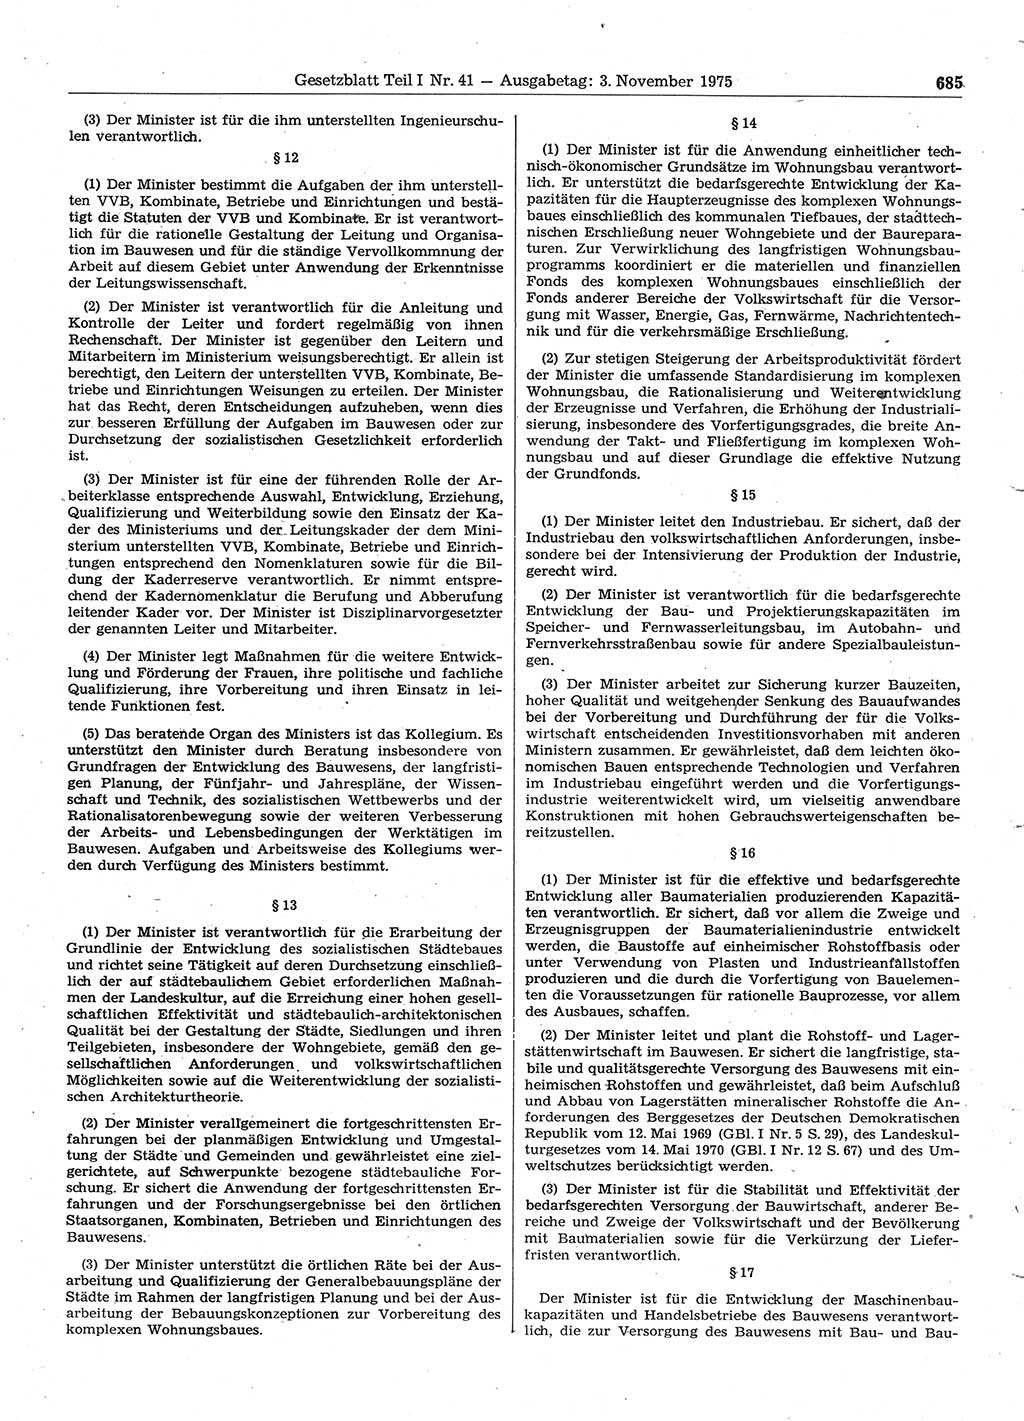 Gesetzblatt (GBl.) der Deutschen Demokratischen Republik (DDR) Teil Ⅰ 1975, Seite 685 (GBl. DDR Ⅰ 1975, S. 685)